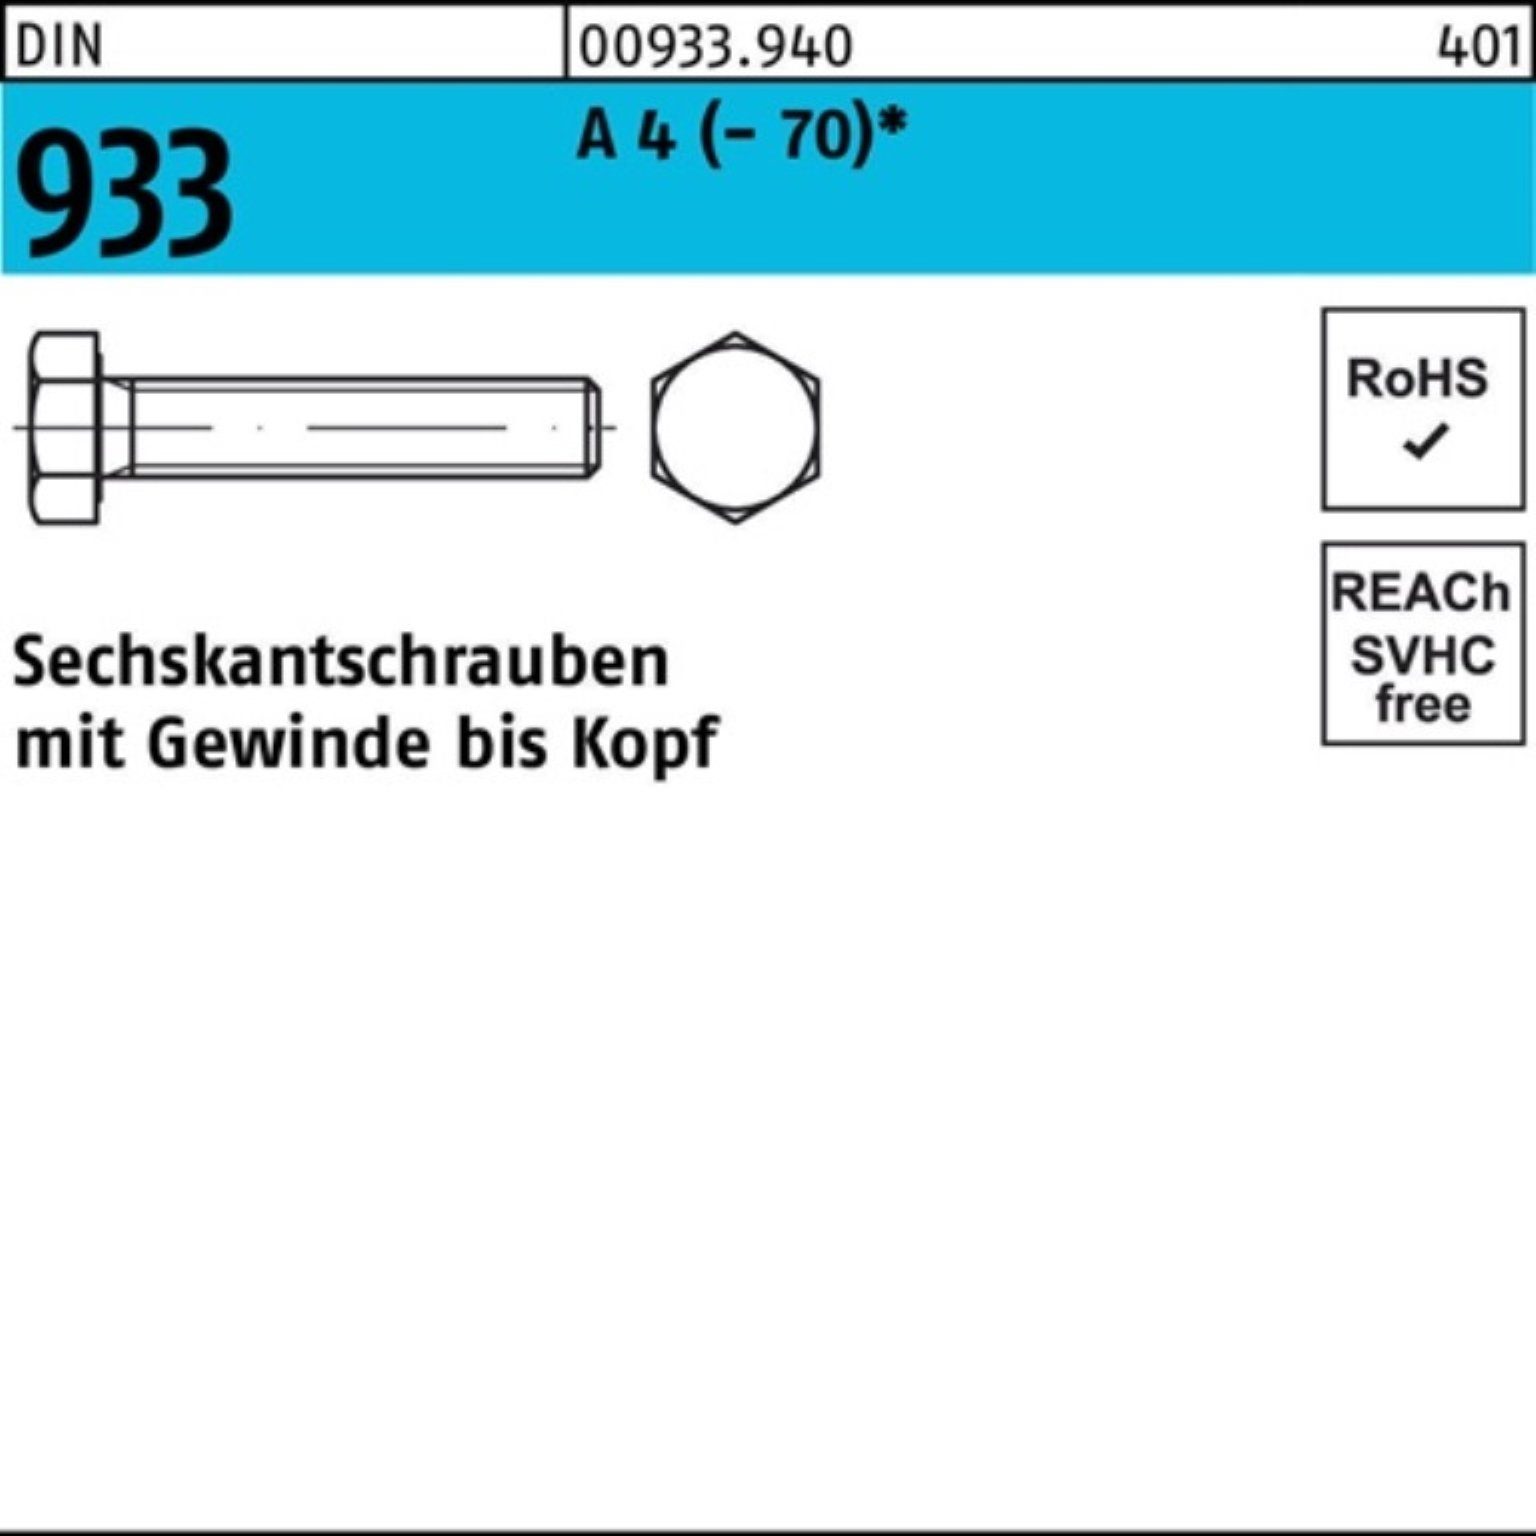 Reyher Sechskantschraube 1 (70) M22x 933 A Sechskantschraube Stück Pack D 100er 4 130 DIN VG